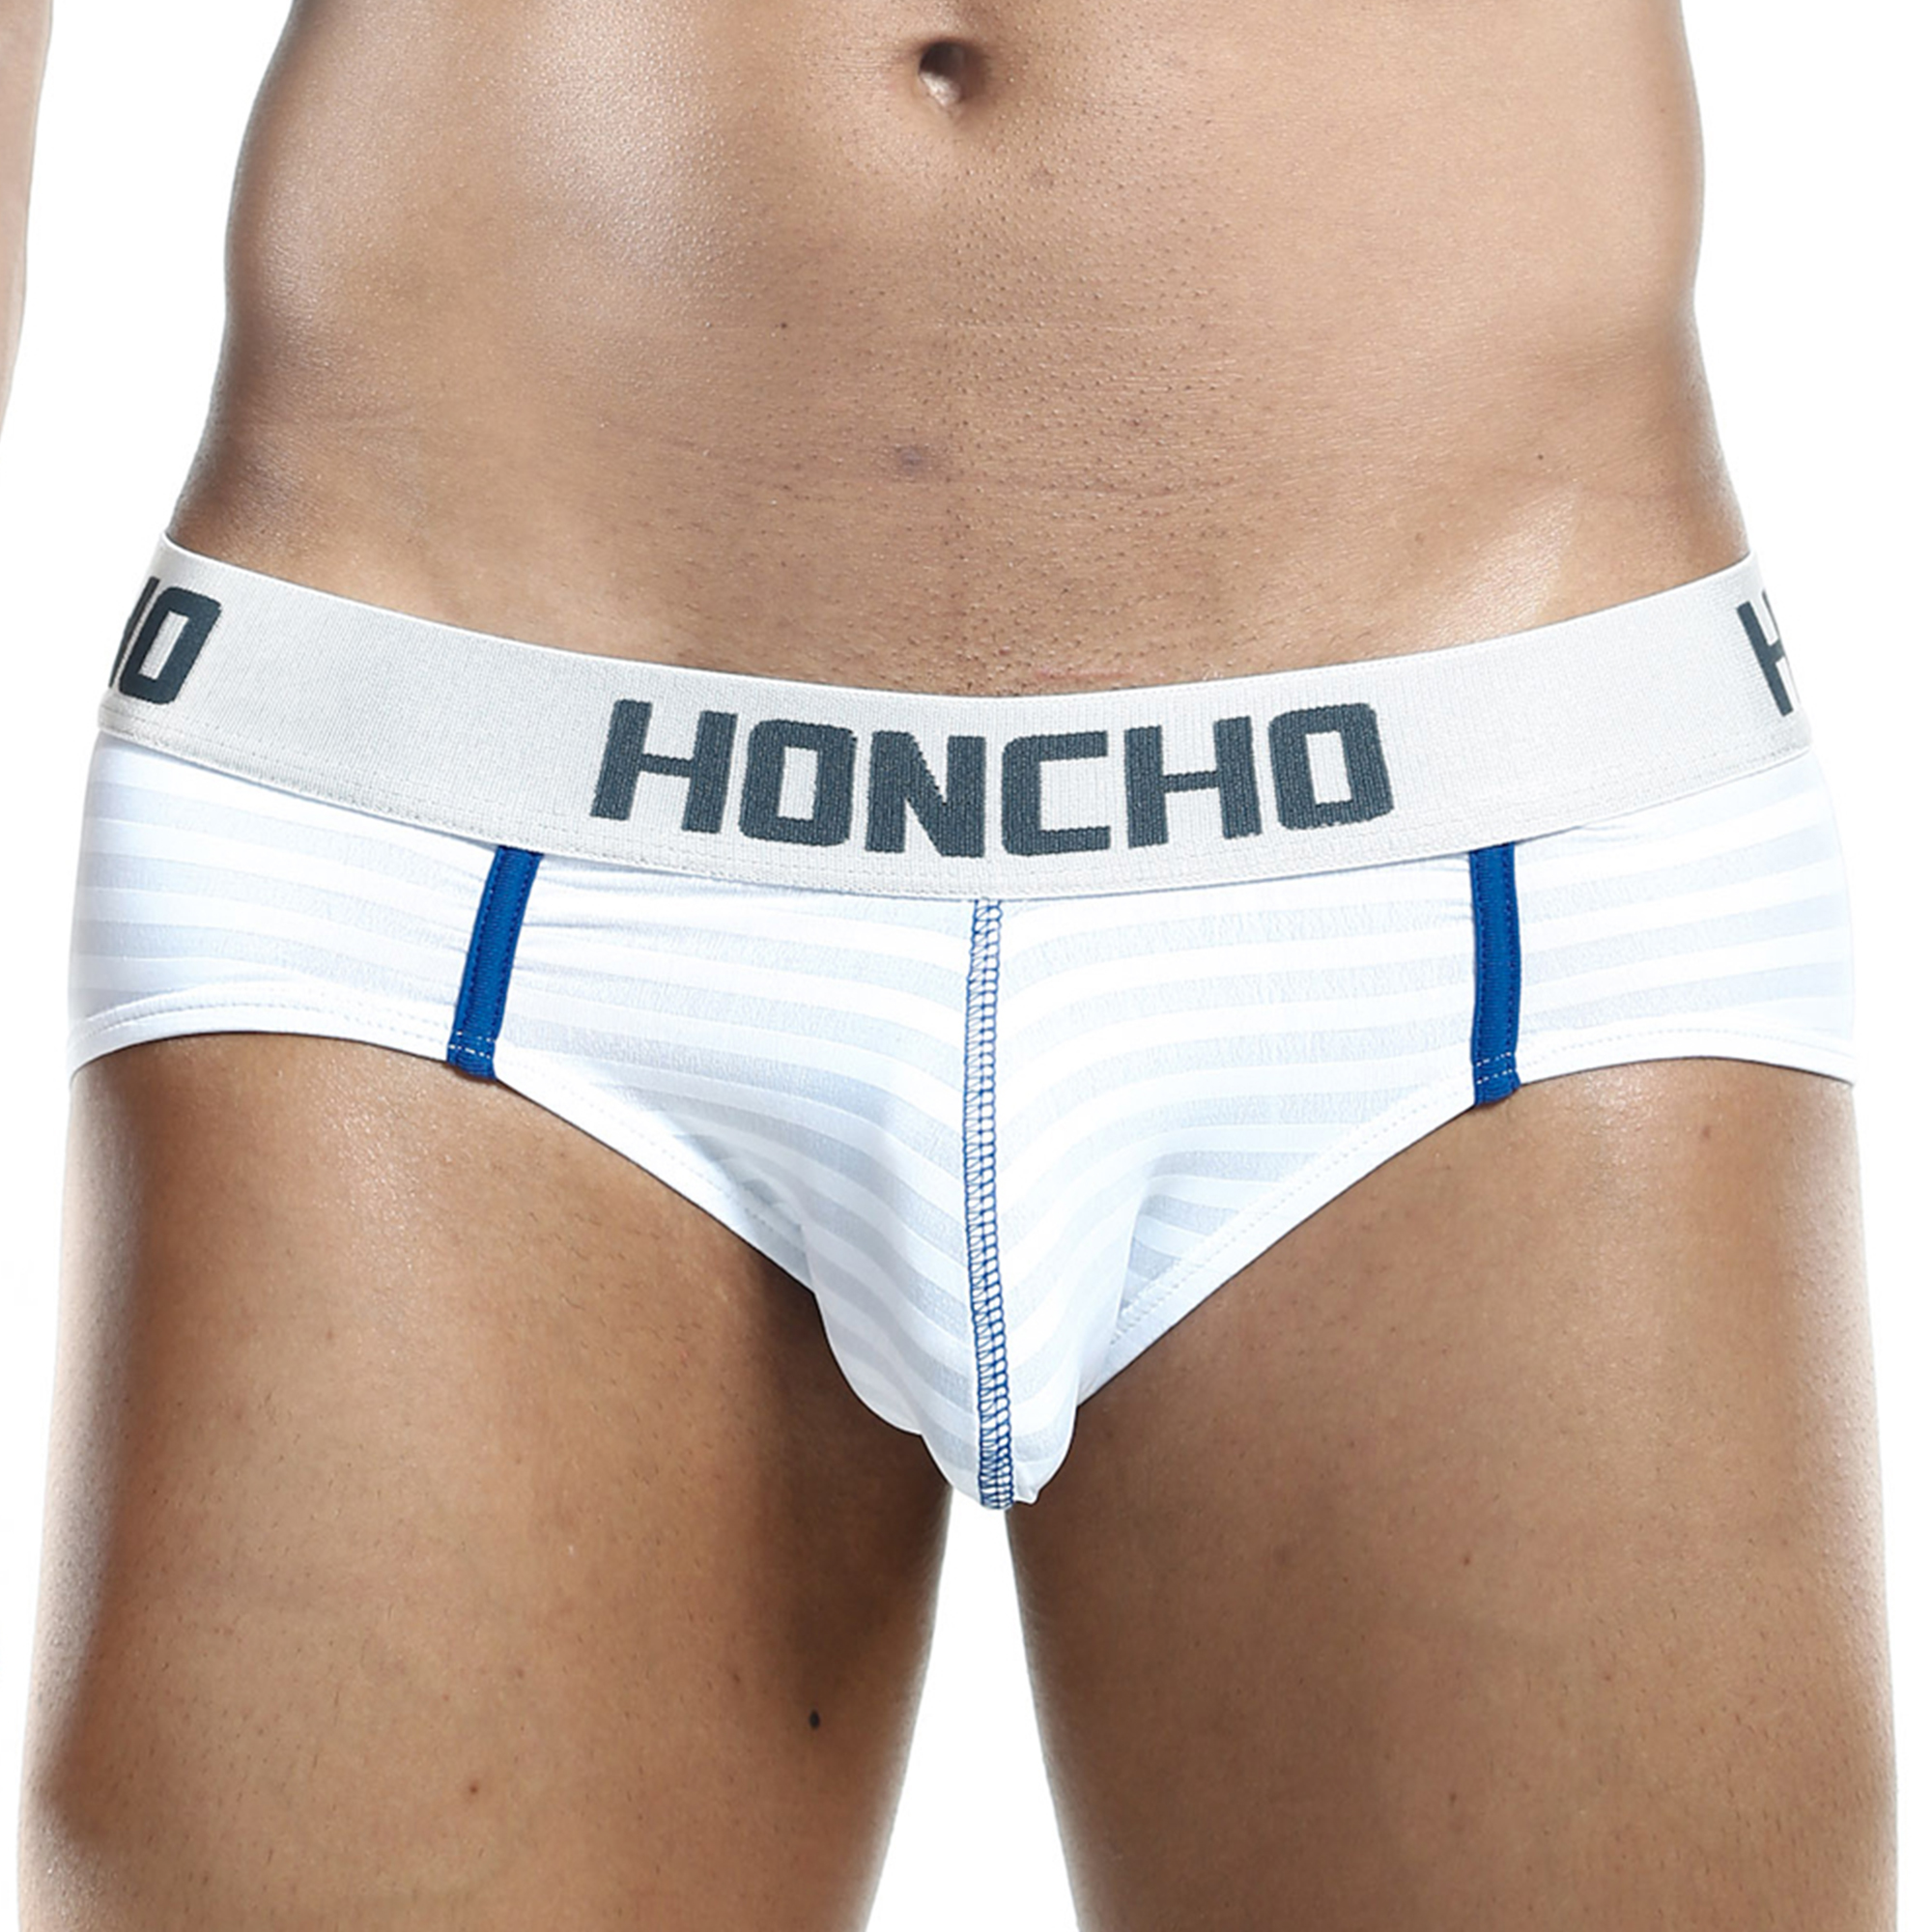 Honcho HOJ016 Brief Mens Underwear